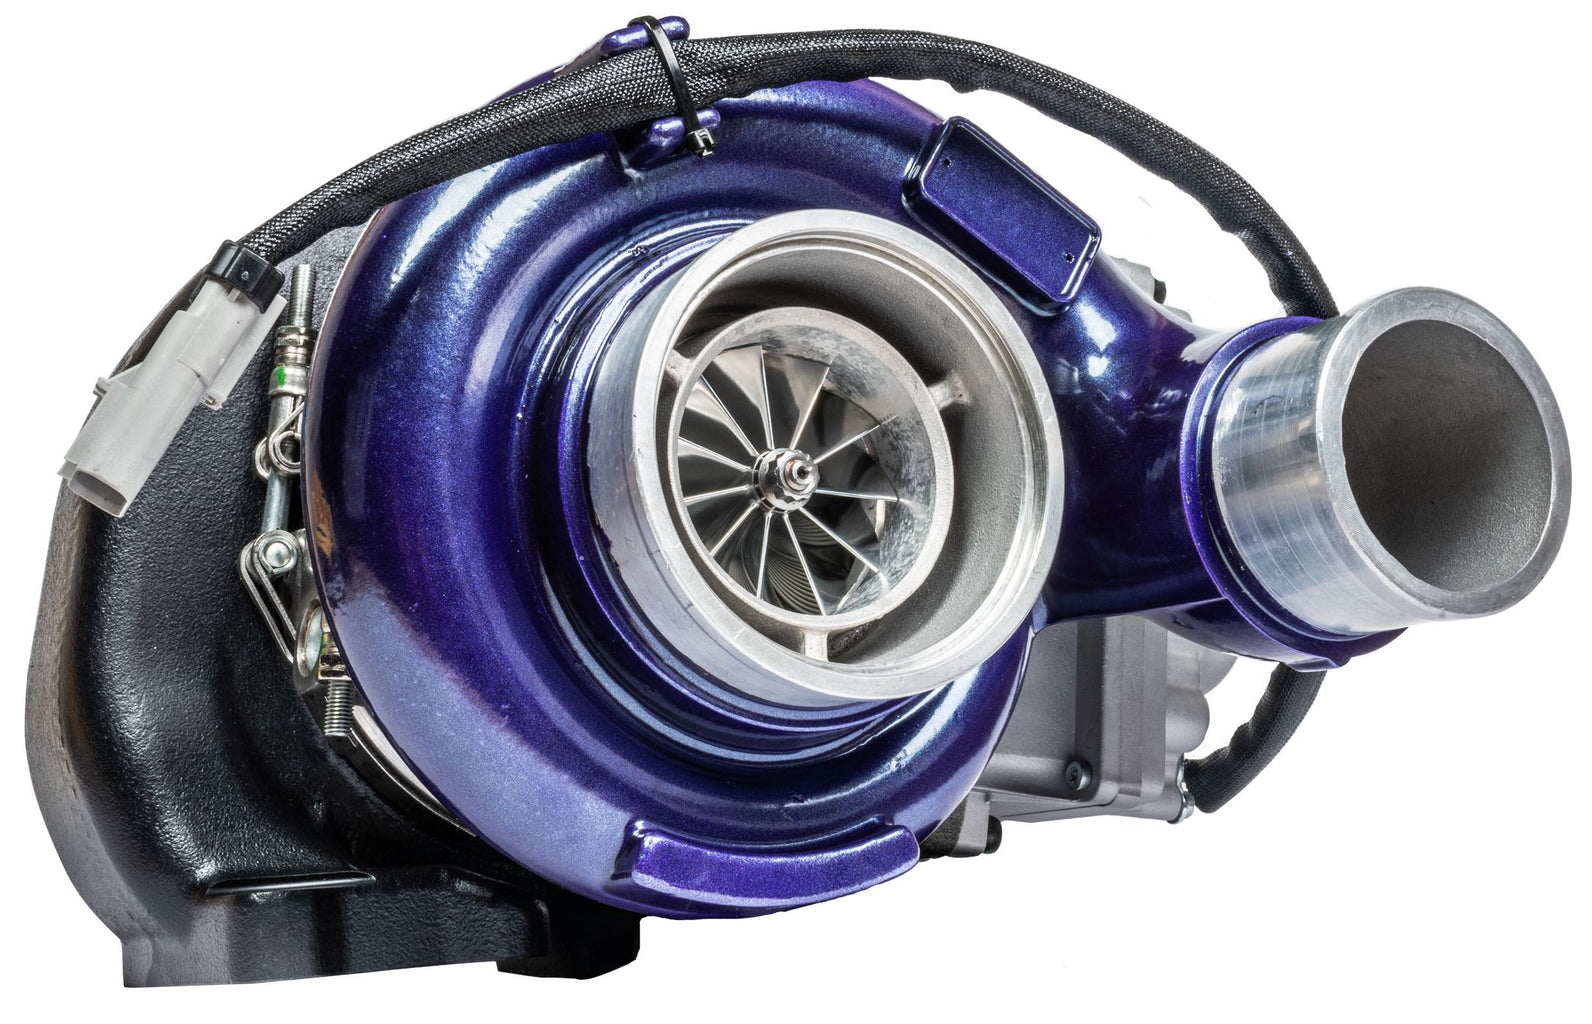 ATS Aurora 4000 Vfr Stage 2 Turbo Fits 2007-2012 6.7L Cummins Turbocharger Kit ATS Diesel Performance 